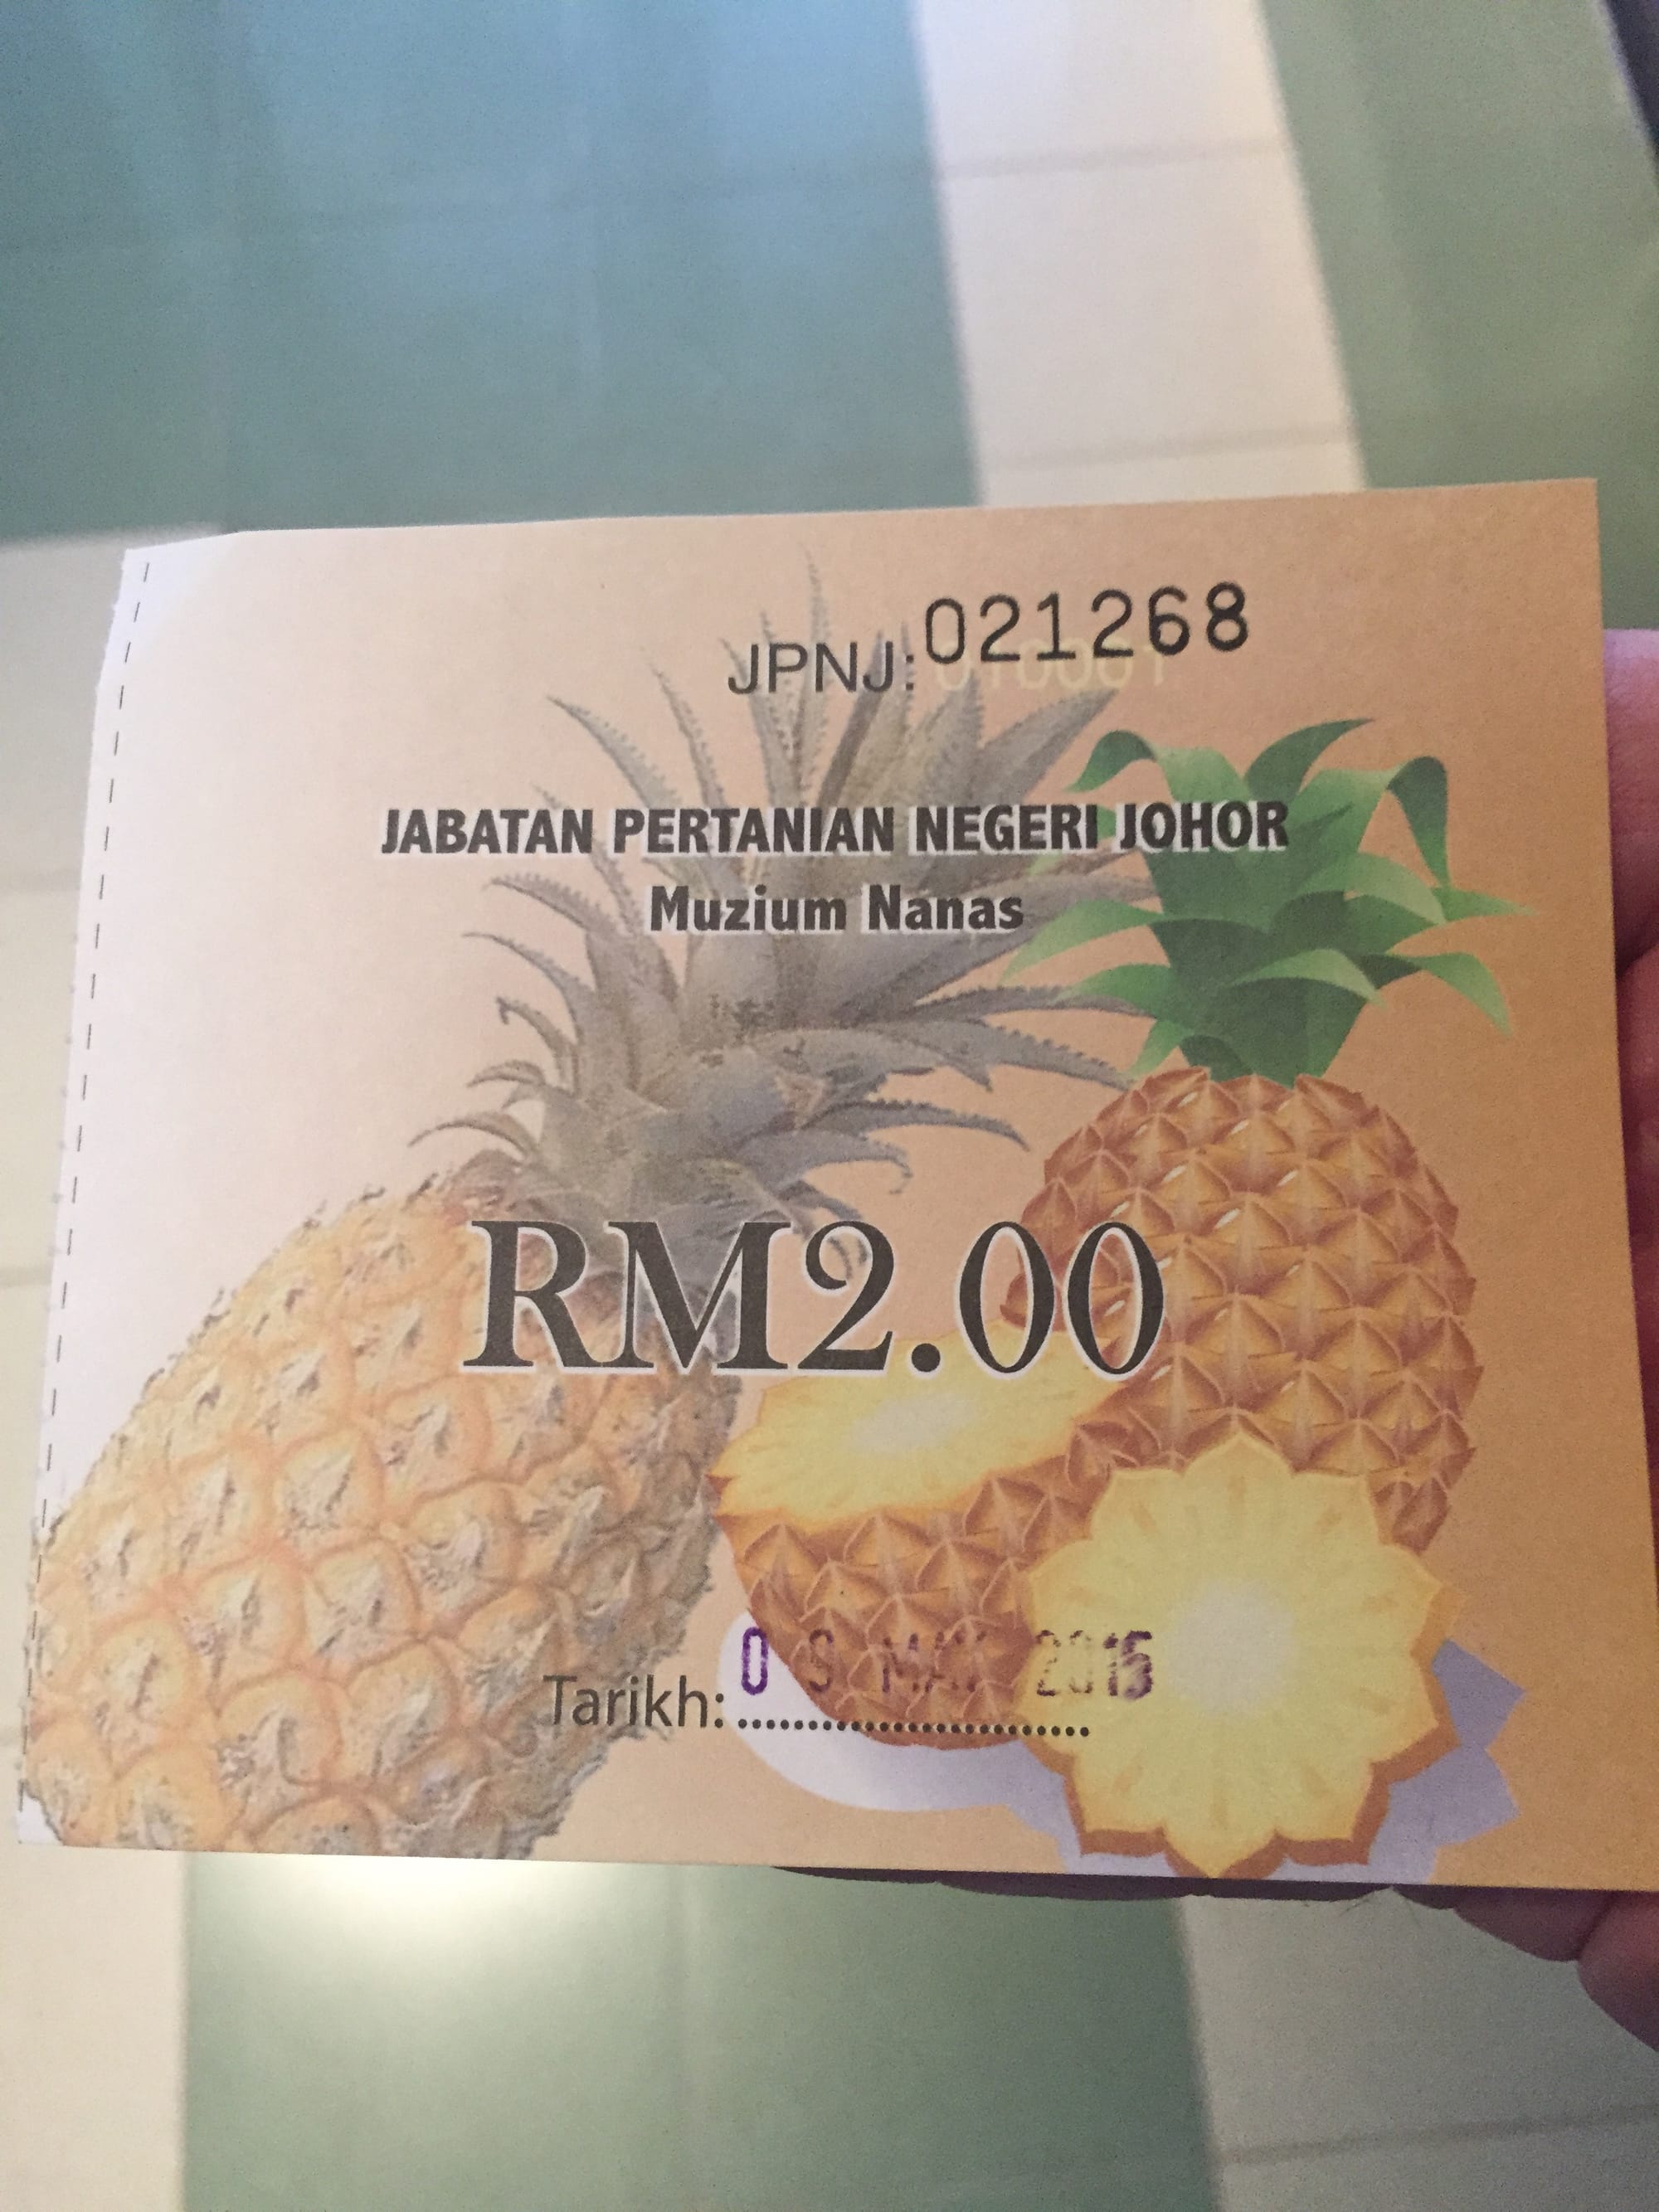 Photo by Author — my ticket to the Muzium Nanas (Pineapple Museum), Johor, Malaysia